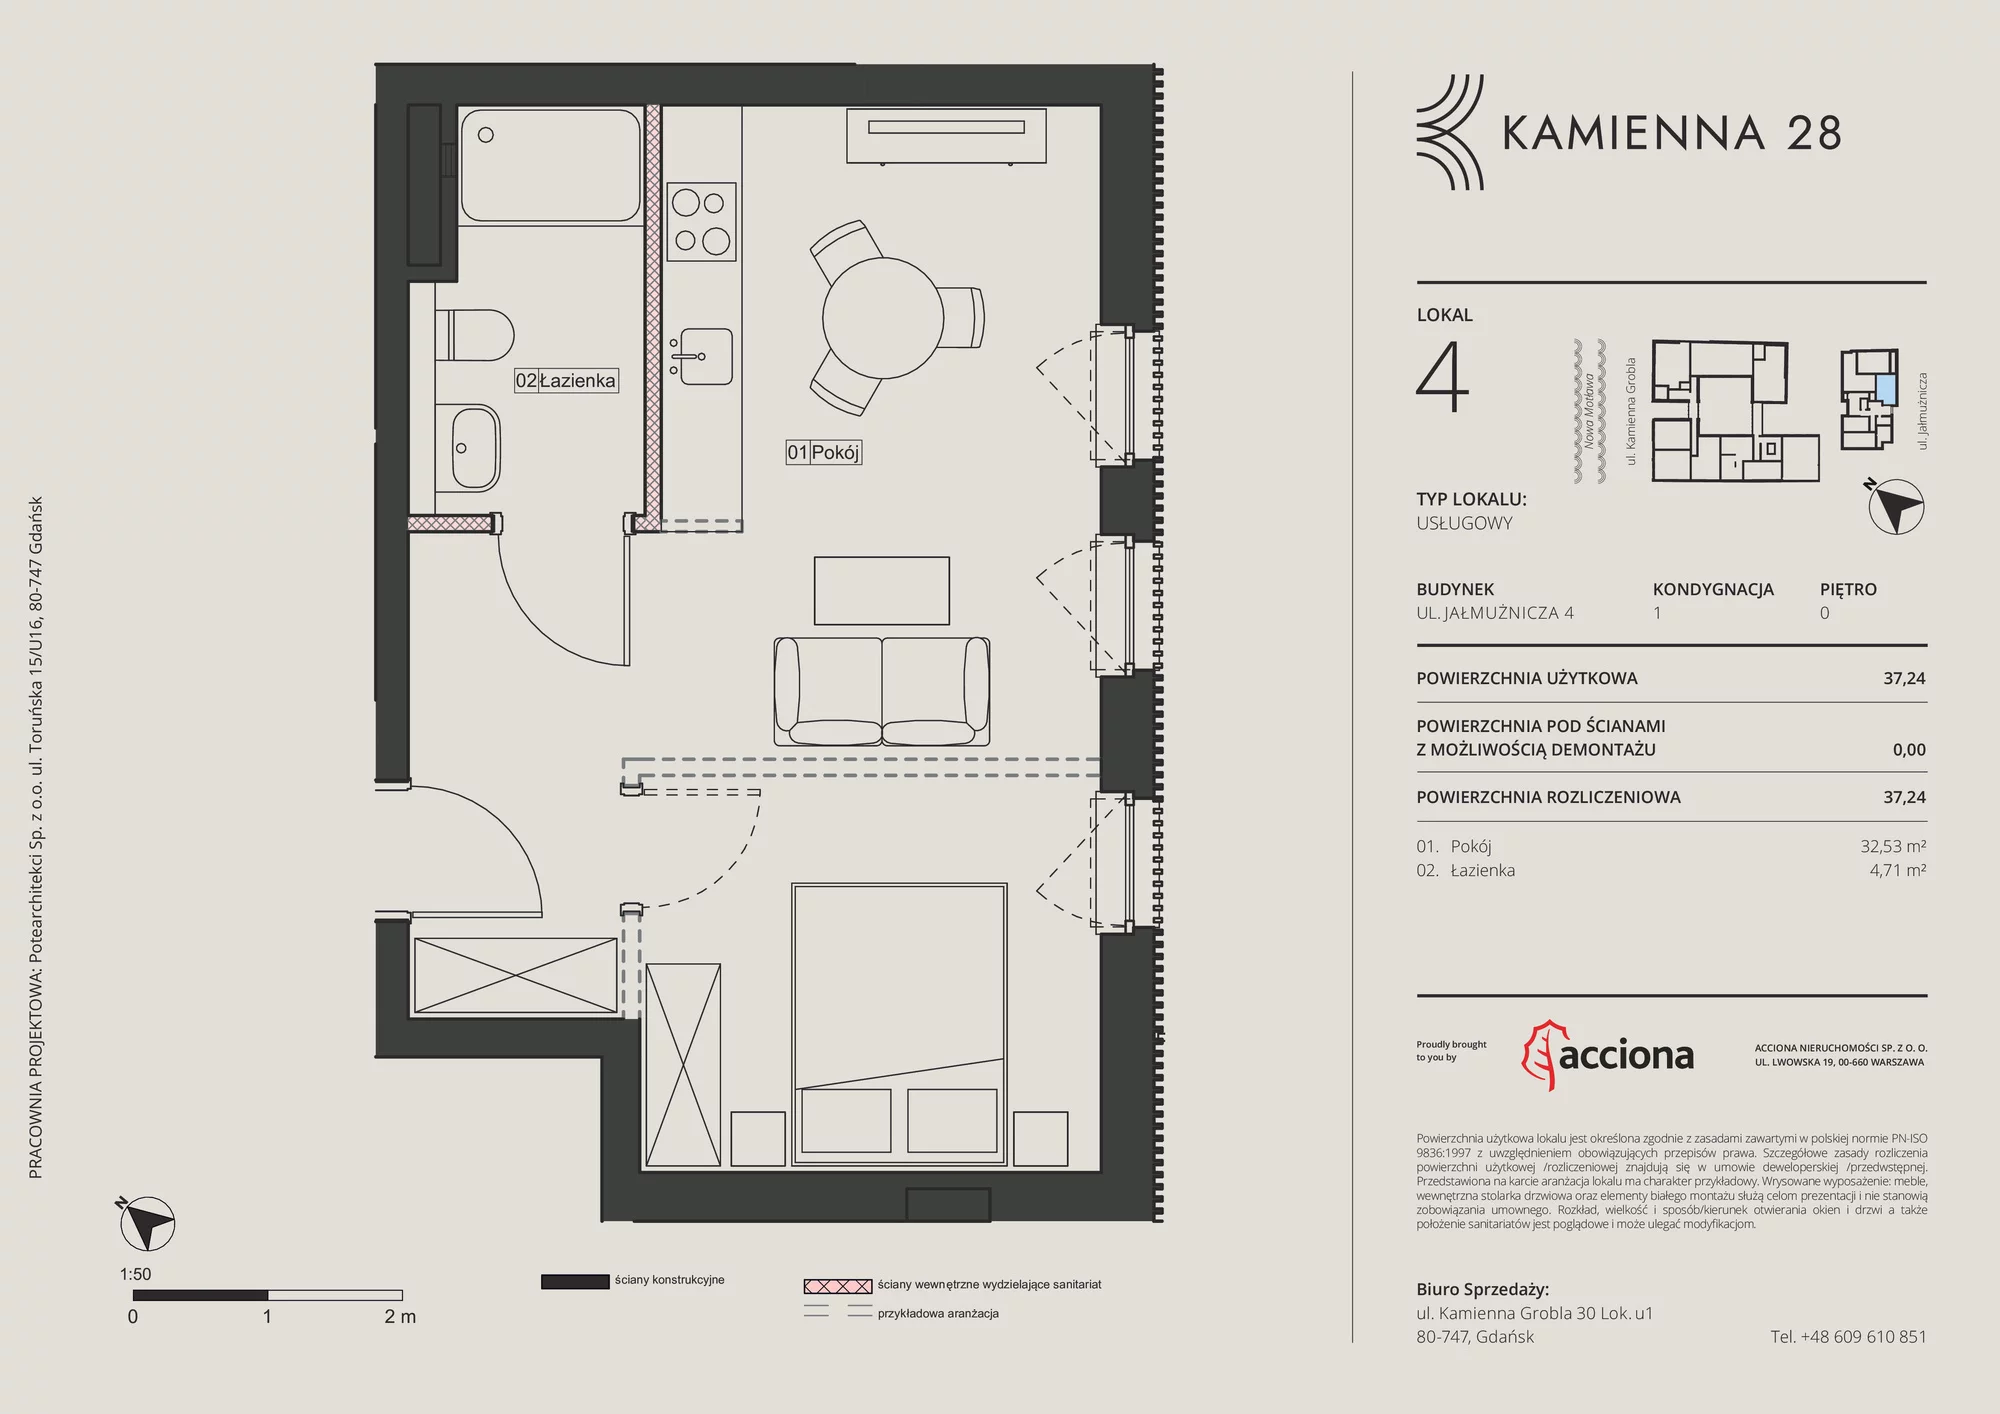 Apartament inwestycyjny 37,24 m², parter, oferta nr 4.4, Kamienna 28 - apartamenty inwestycyjne, Gdańsk, Śródmieście, Dolne Miasto, ul. Jałmużnicza 4